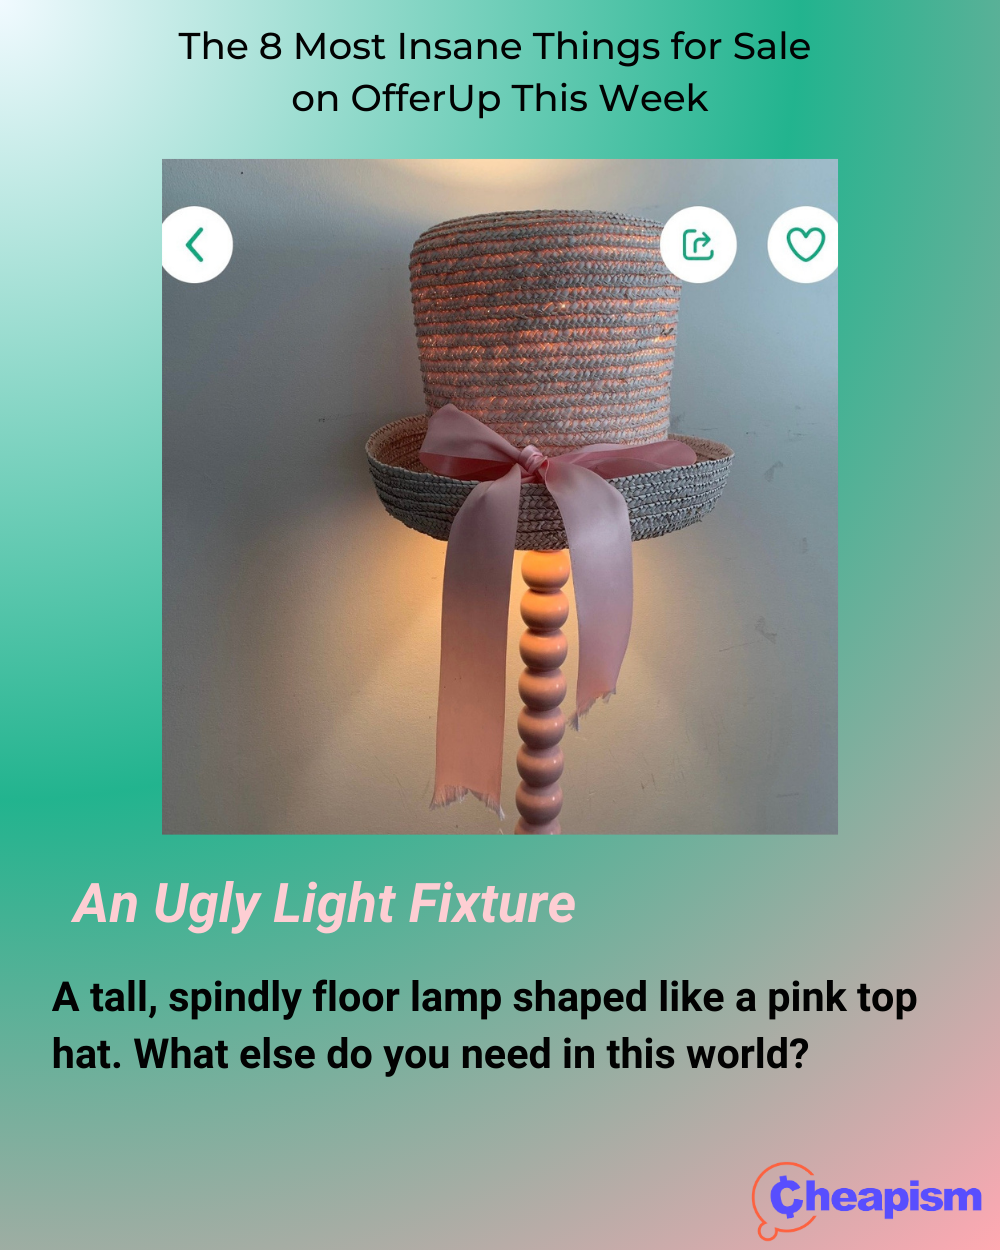 Top Hat-Shaped Floor Lamp